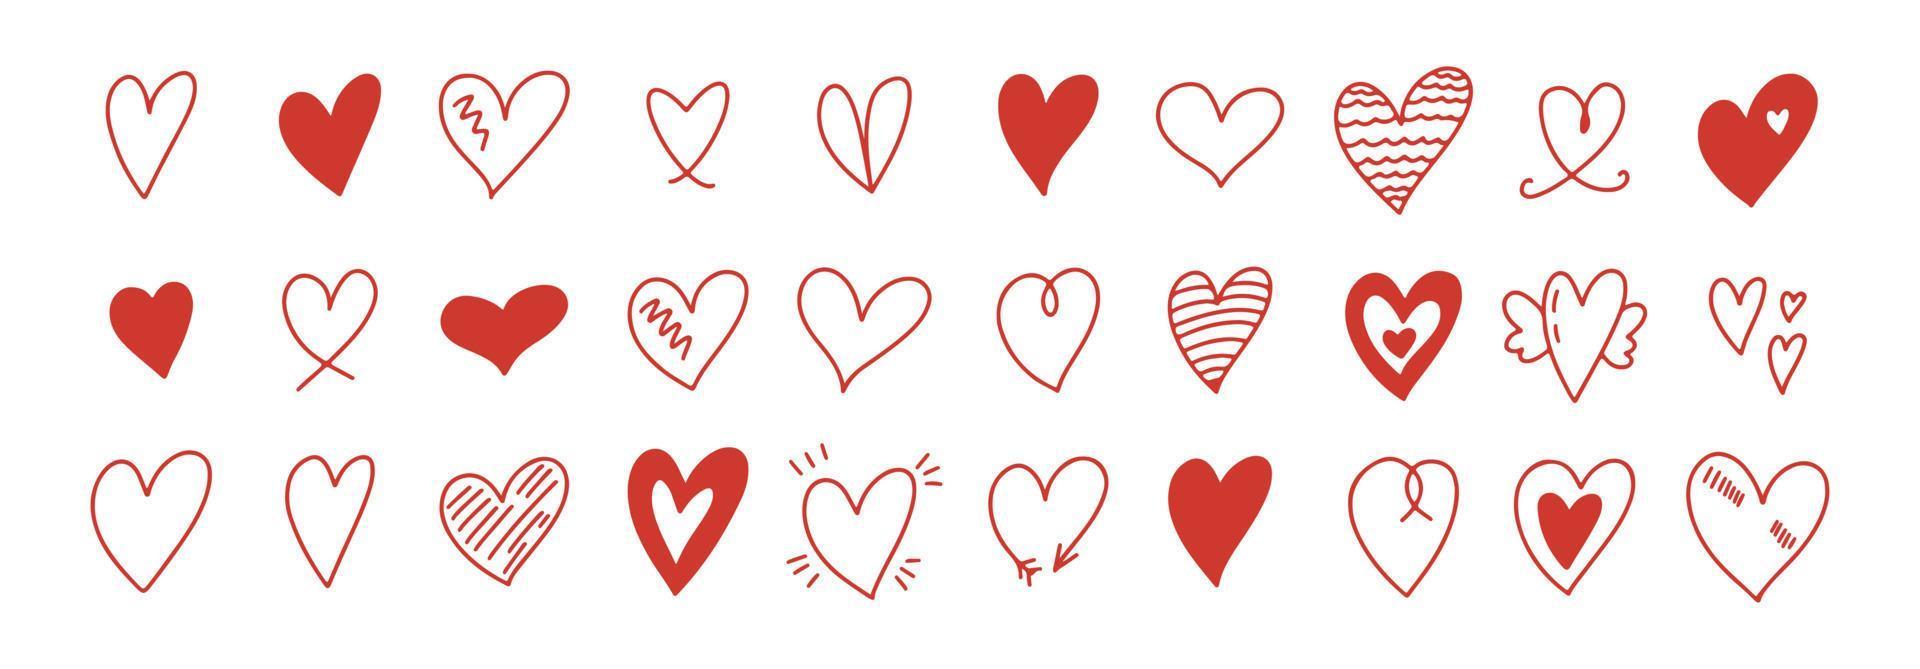 conjunto de esboço de corações do doodle. vários ícones de coração de mão desenhada diferente coleção de amor isolada no fundo branco. símbolo de coração vermelho para dia dos namorados. vetor